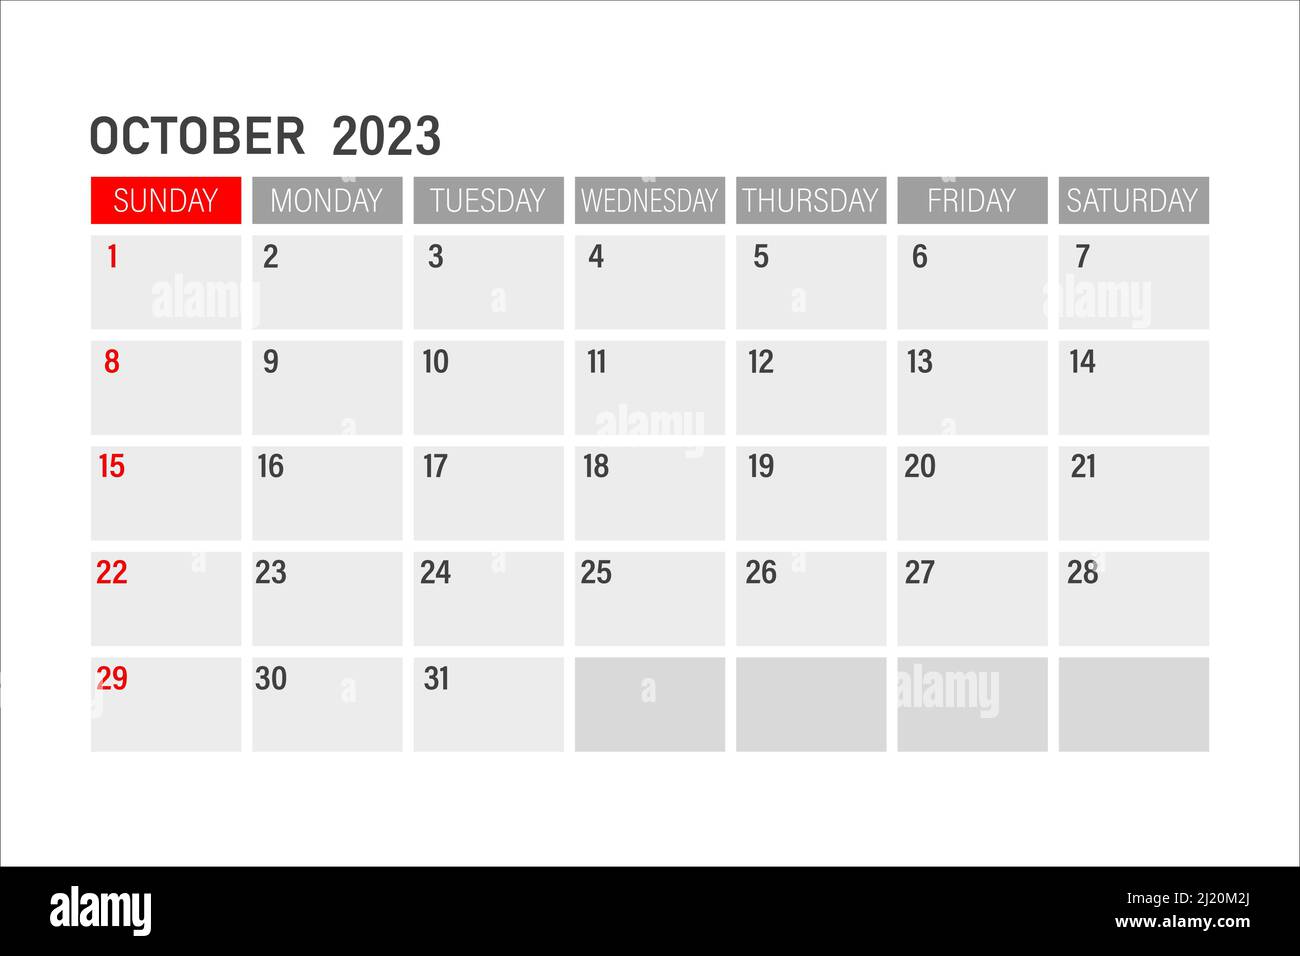 Plantilla de calendario para octubre de diseão para el aão de octubre planificador mensual imprimible diseão de calendario de critorio comienzo de la semana el domingo imagen vector de stock